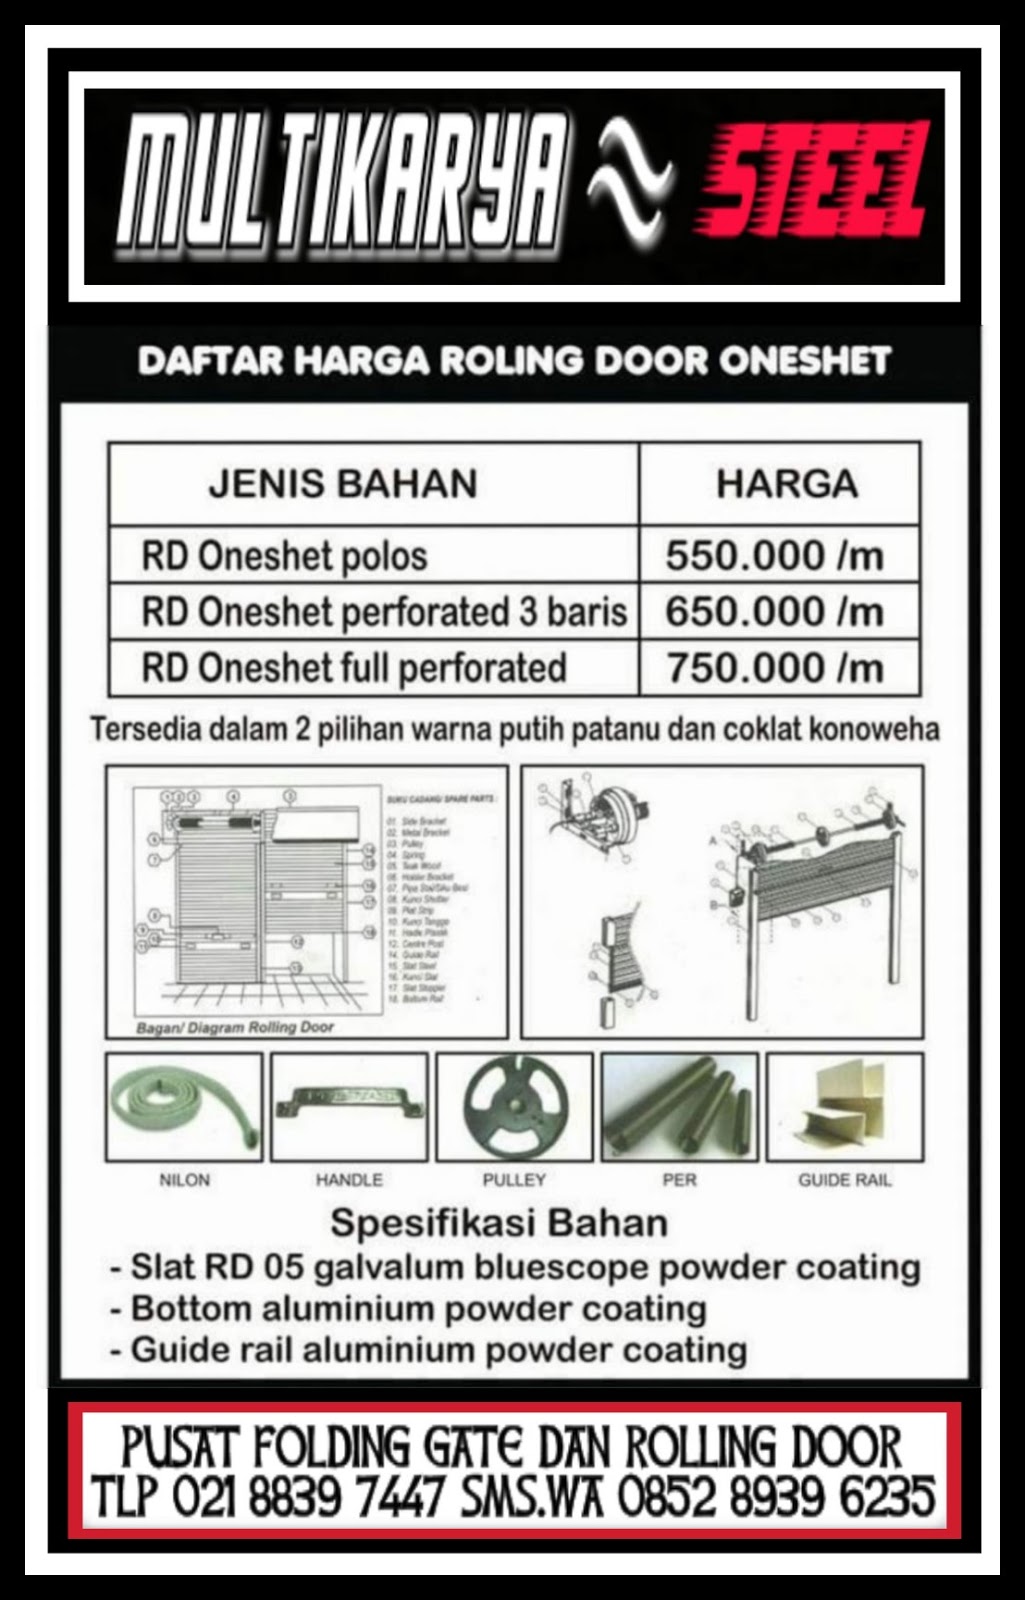 Daftar Harga Rolling Door Tangerang Murah FOLDING GATE 